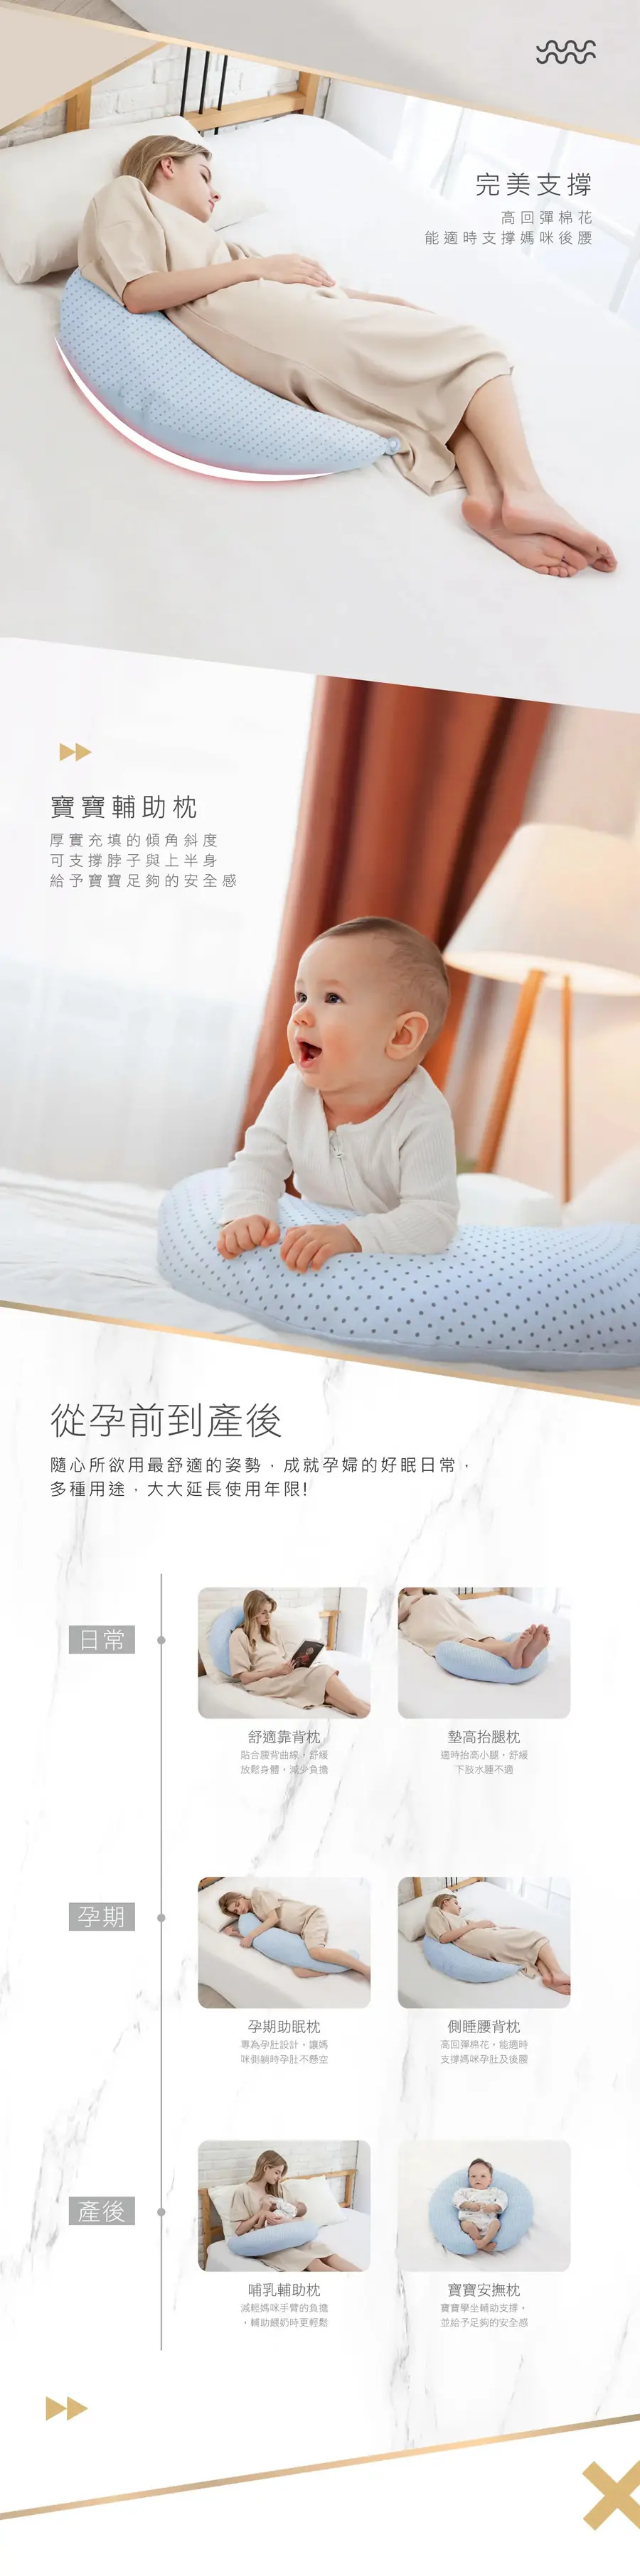 KuKu Duck 授乳月亮枕(毛巾+棉質布料)